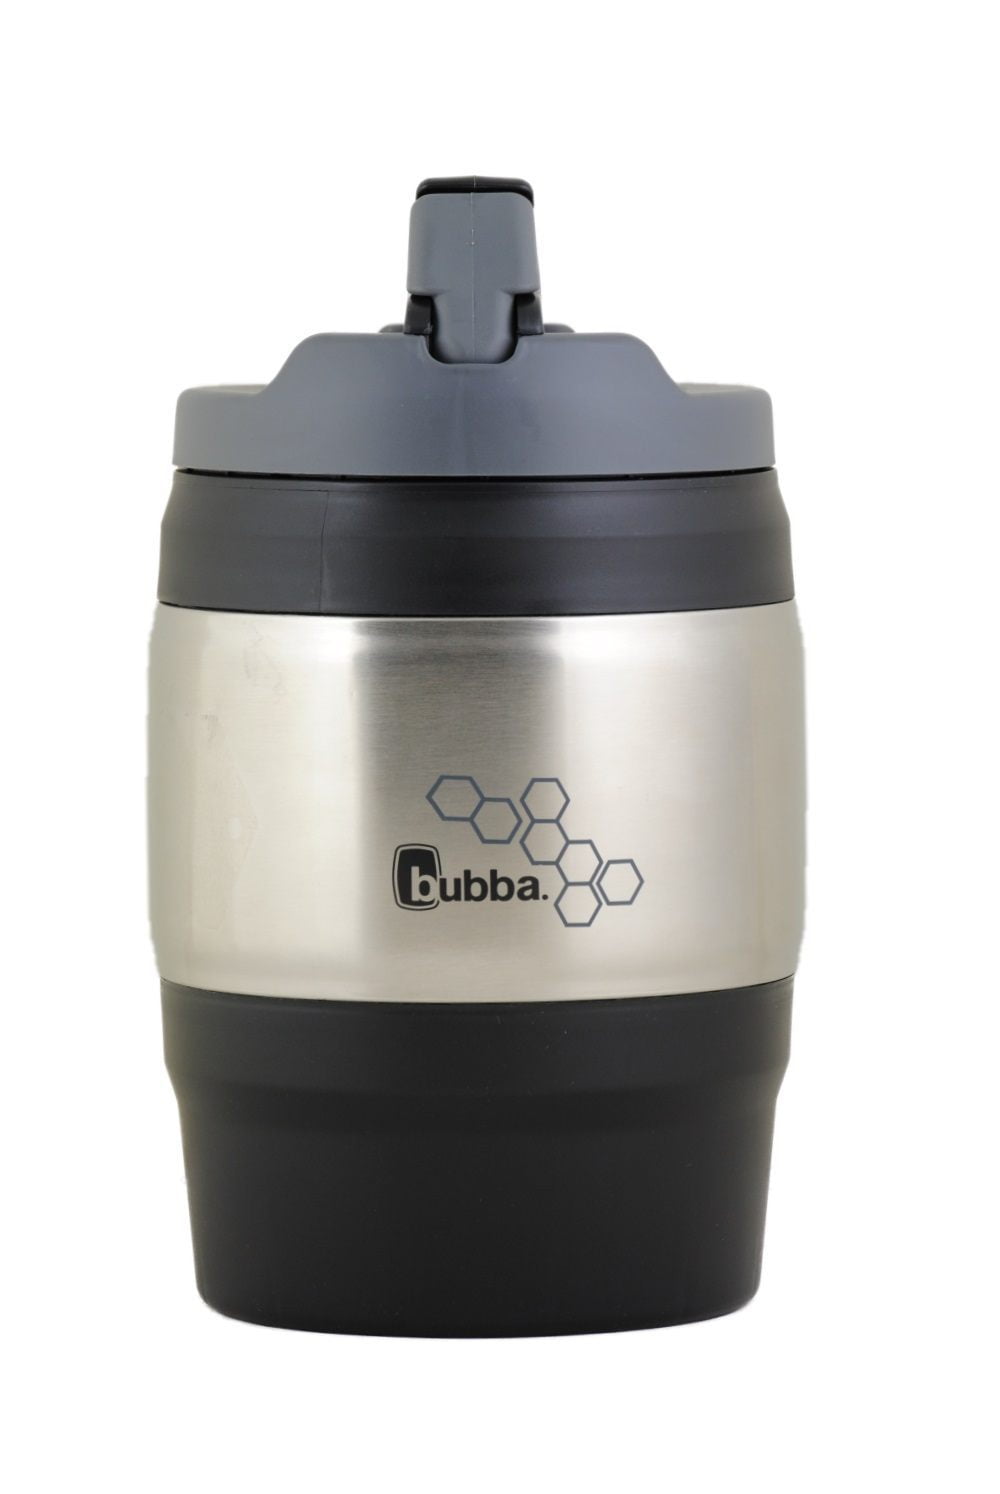 Bubba Keg Travel Mug 20 oz. Coffee BPA Free Black with Lid